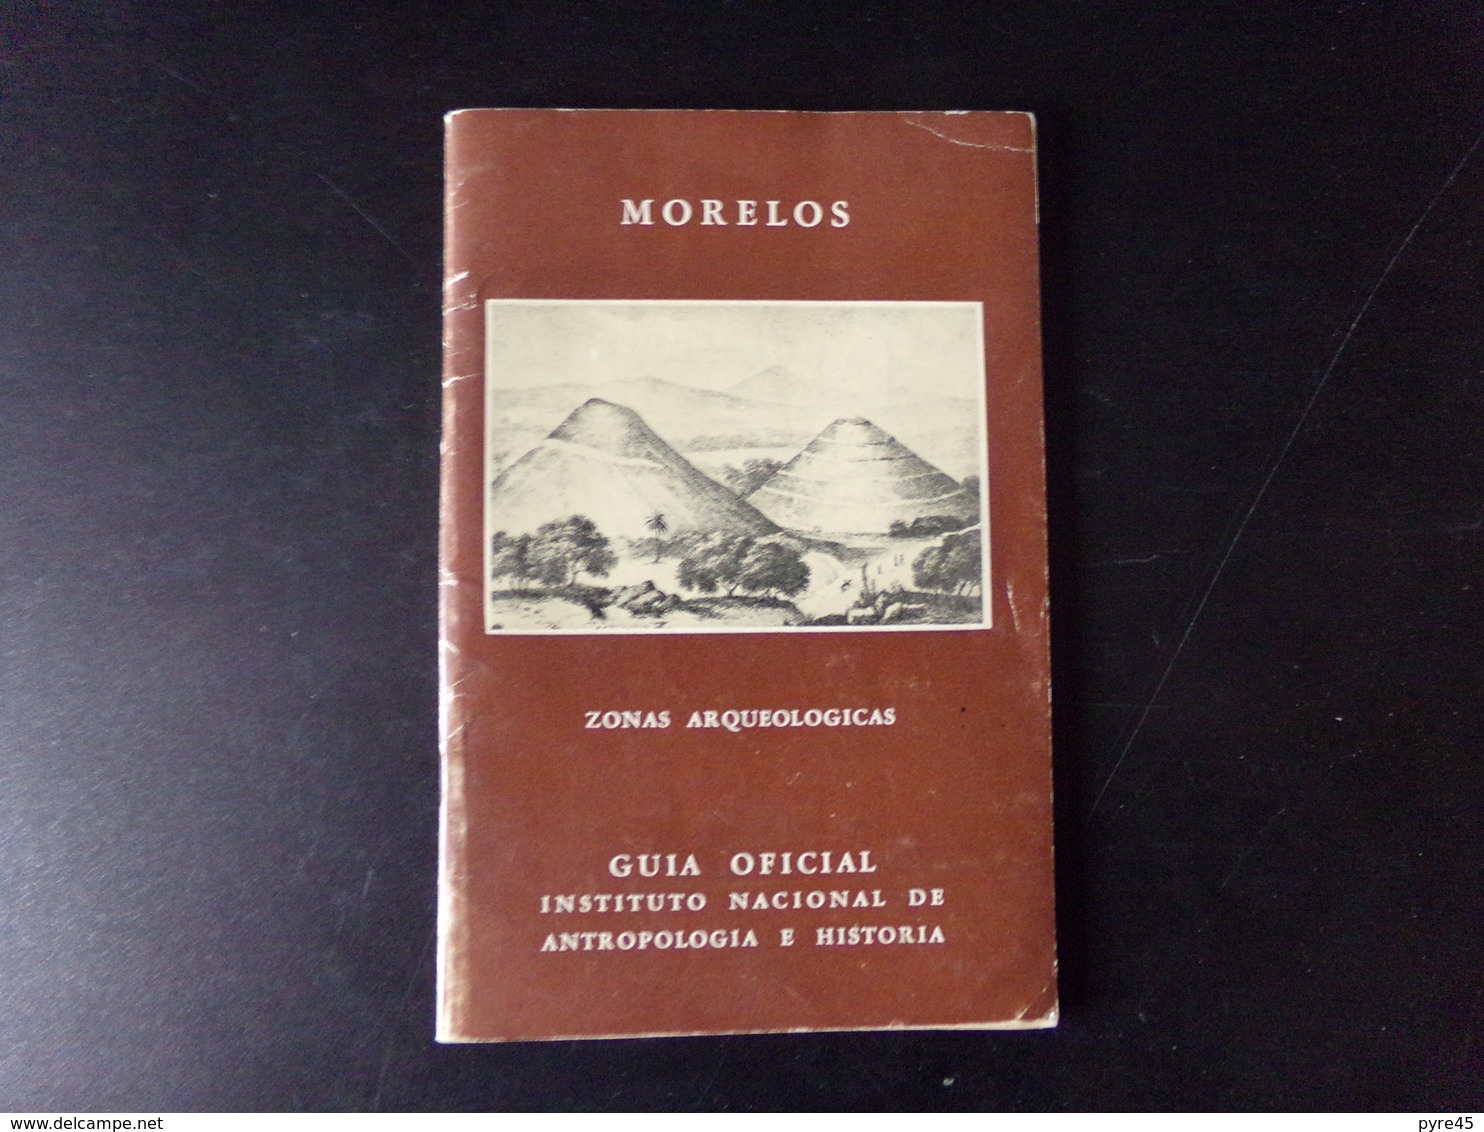 Morelos Zonas Arqueologicas Par Noguera, 1960, 71 Pages - Cultura